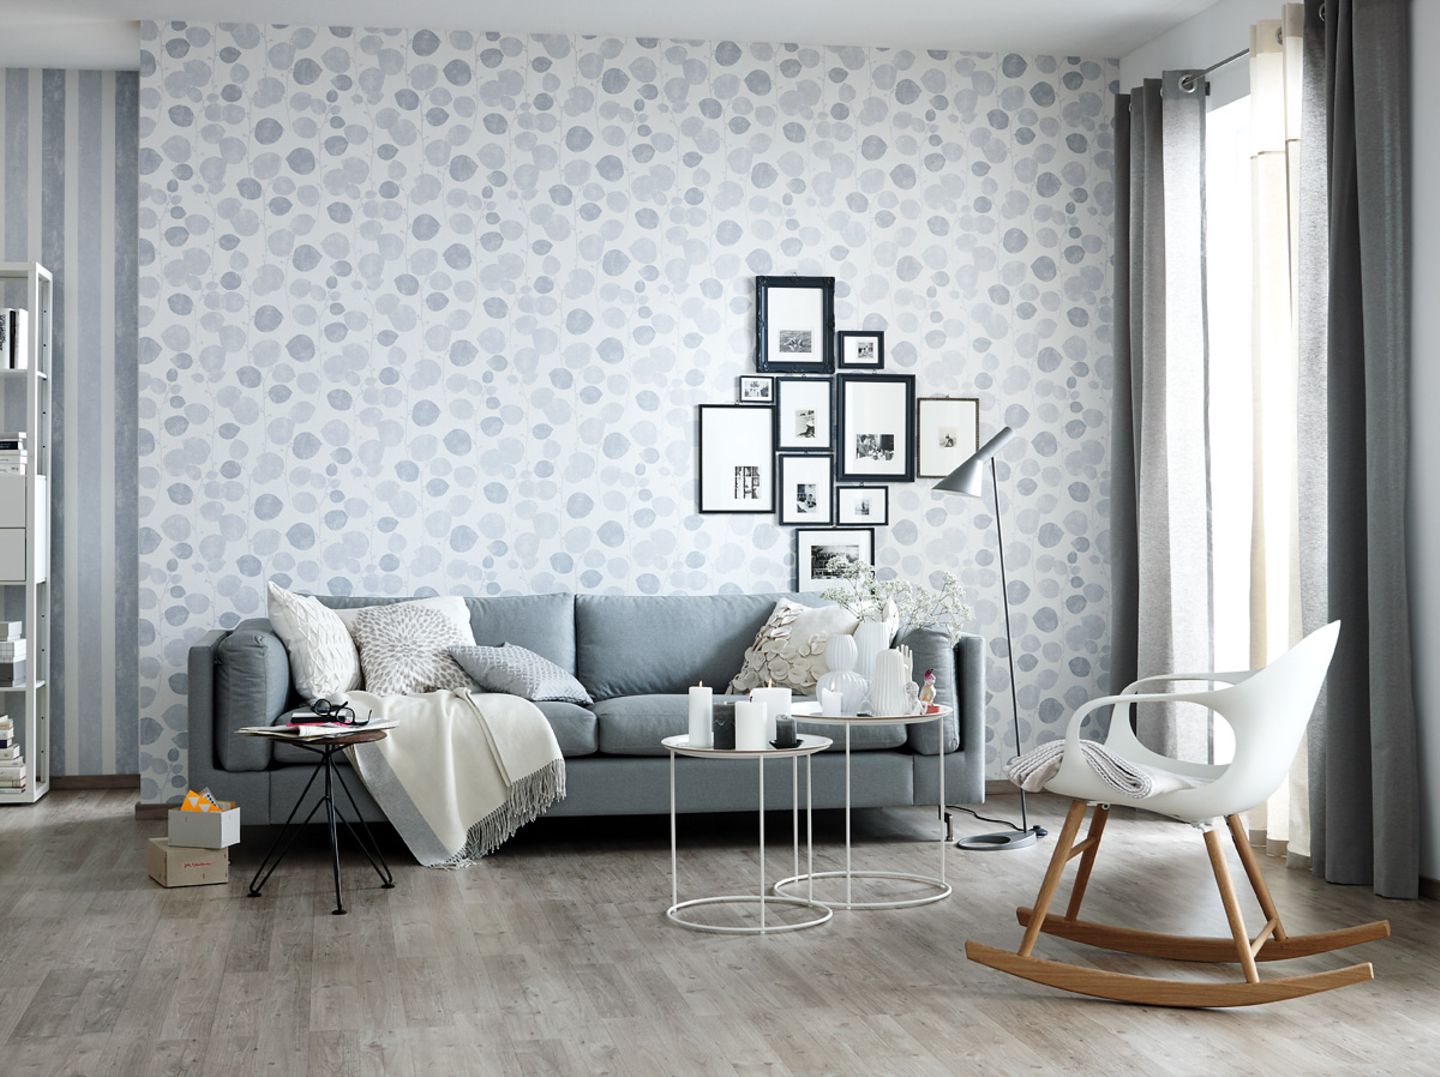 ein wohnzimmer in klassichem grau-weiß gestalten - bild 5